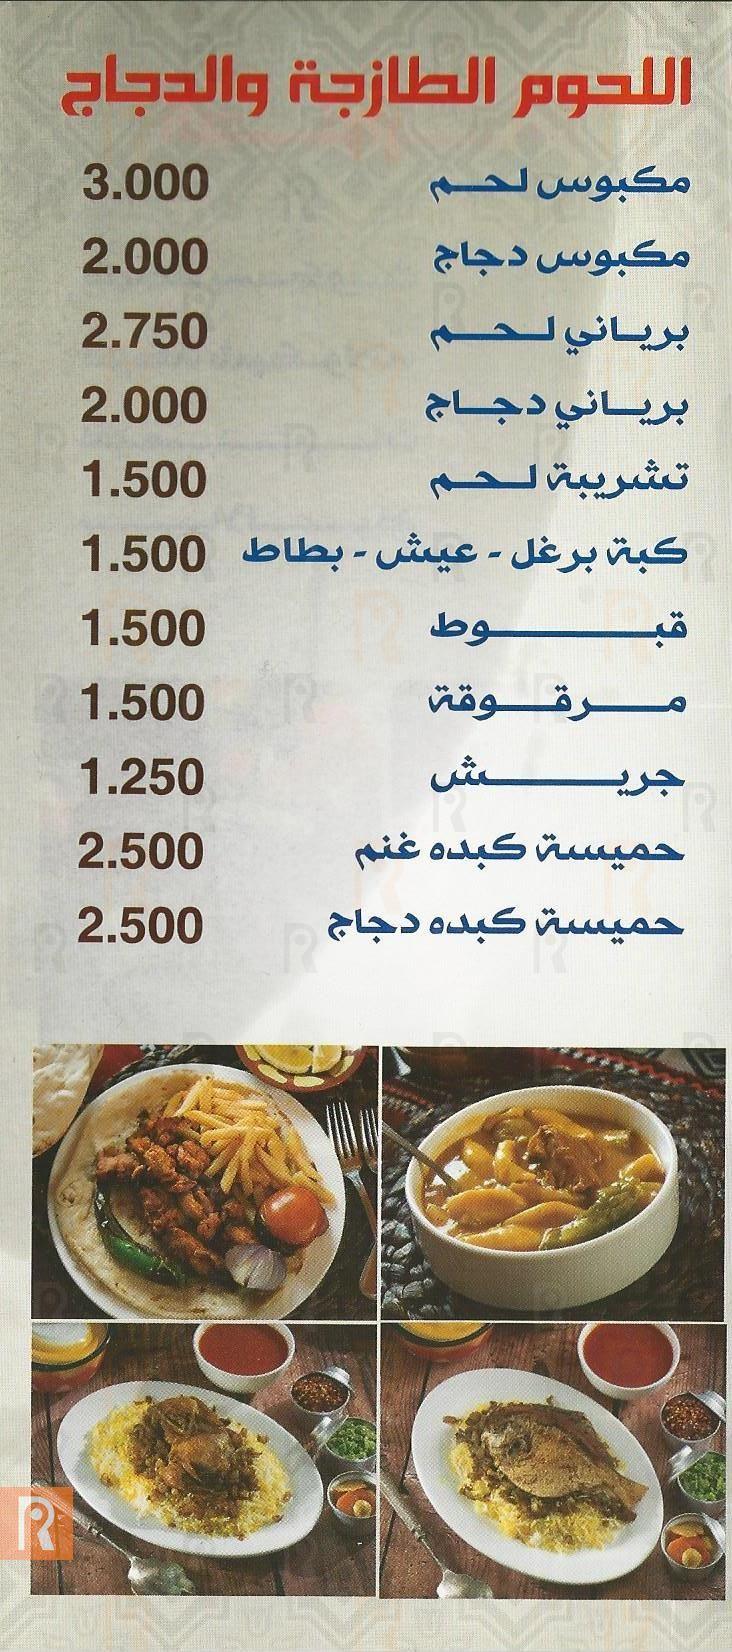 قائمة توصيل مطعم الستينات الكويتي